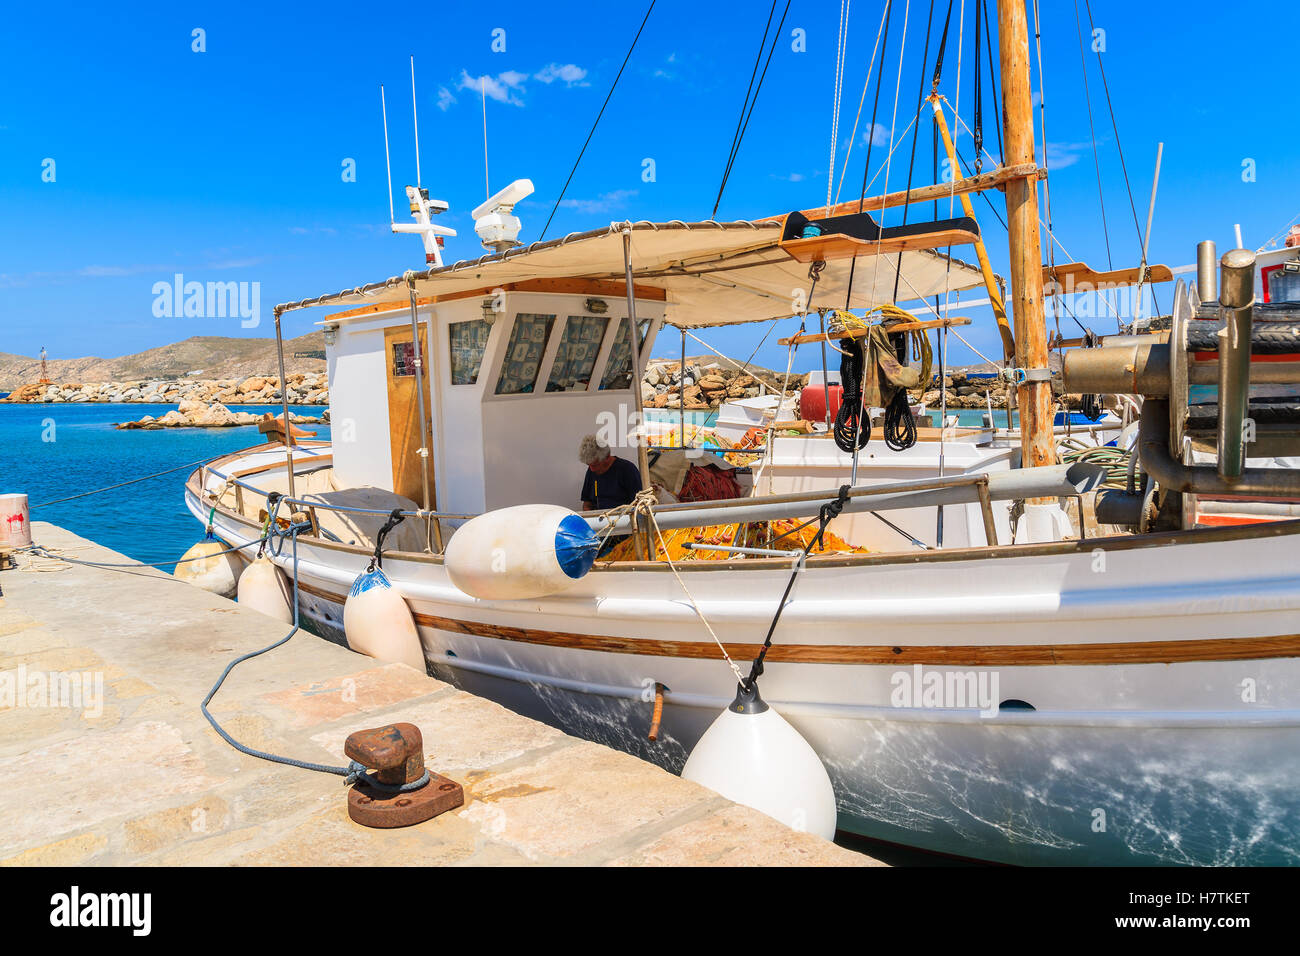 NAOUSSA PORTA, isola di paros - 20 Maggio 2016: pescatore a lavorare su una barca nel porto di Naoussa, isola di Paros, Cicladi Grecia. Foto Stock